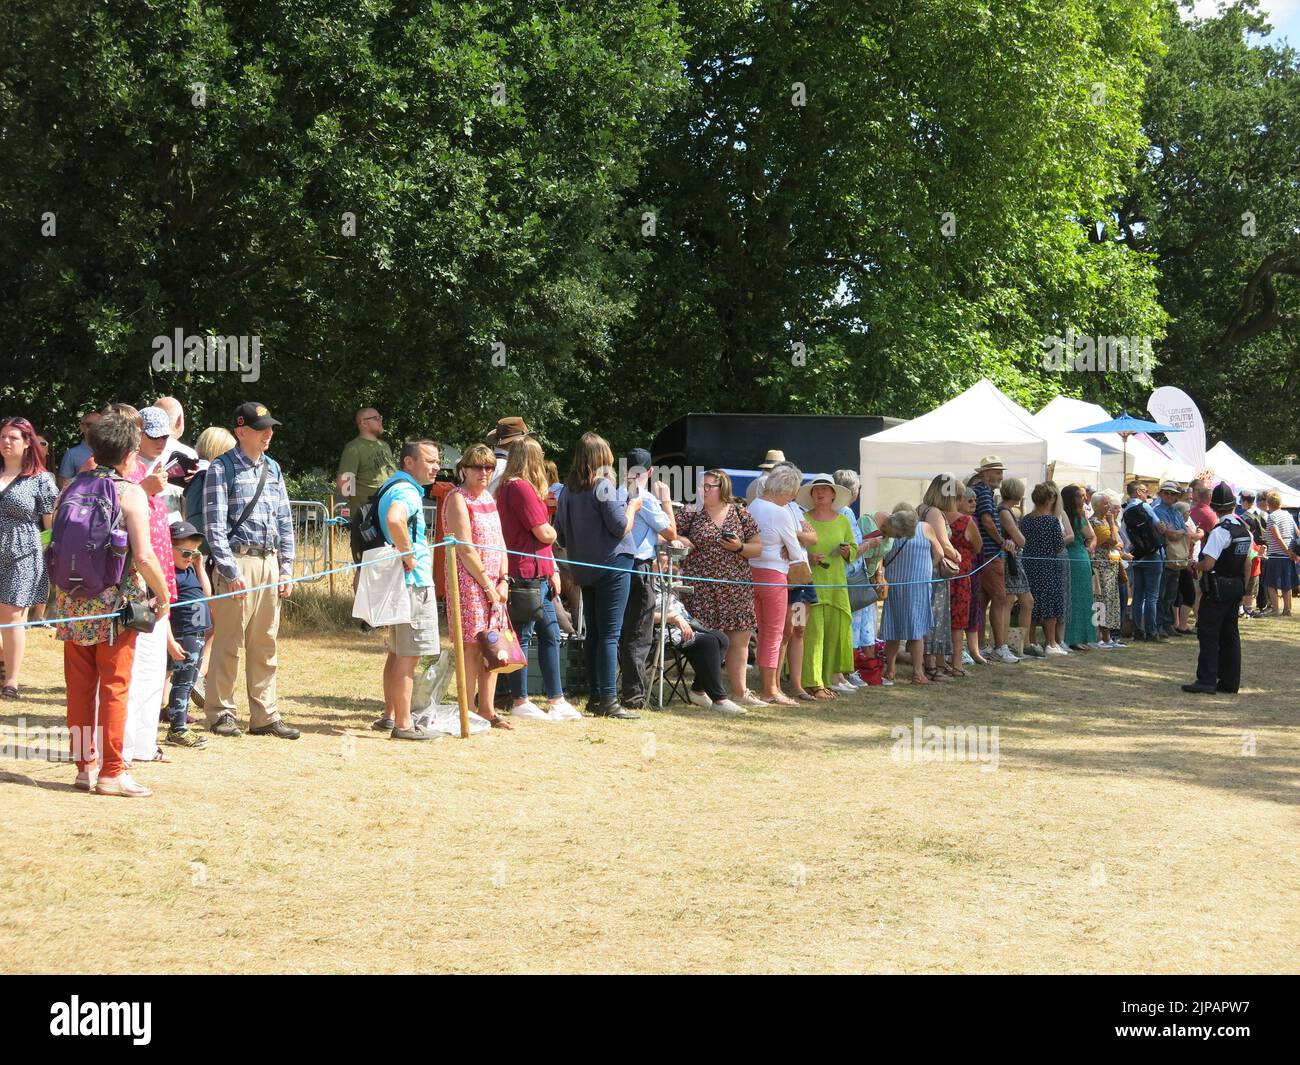 La folla si allinea lungo il percorso in attesa della carrozza reale che trasporta Charles & Camilla durante la loro visita al Sandringham Flower Show, 2022 luglio. Foto Stock